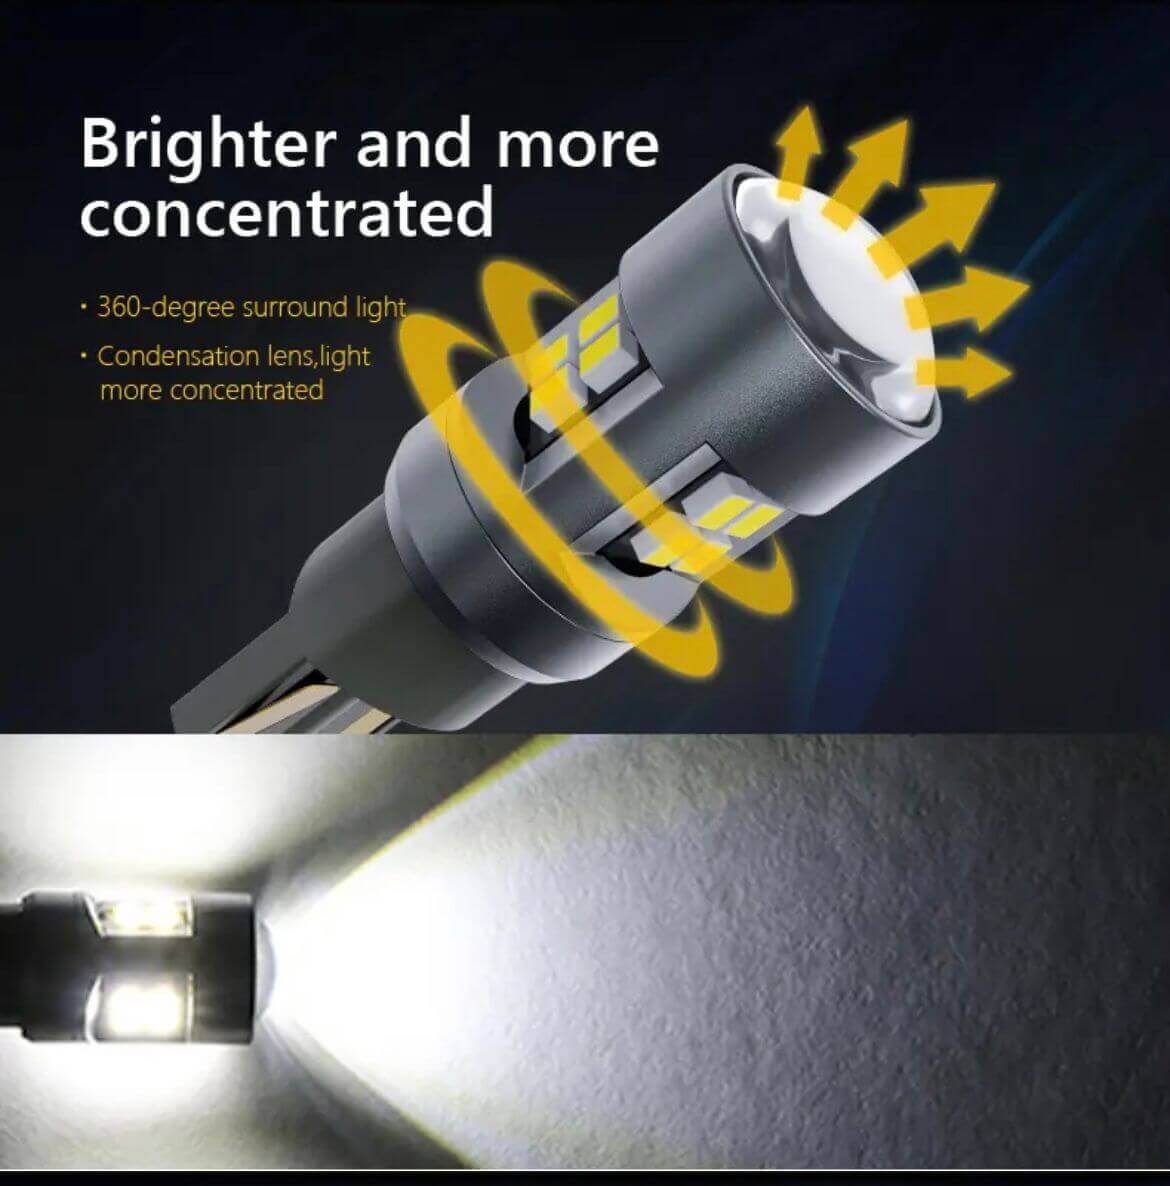 LED-uri eficiente energetic